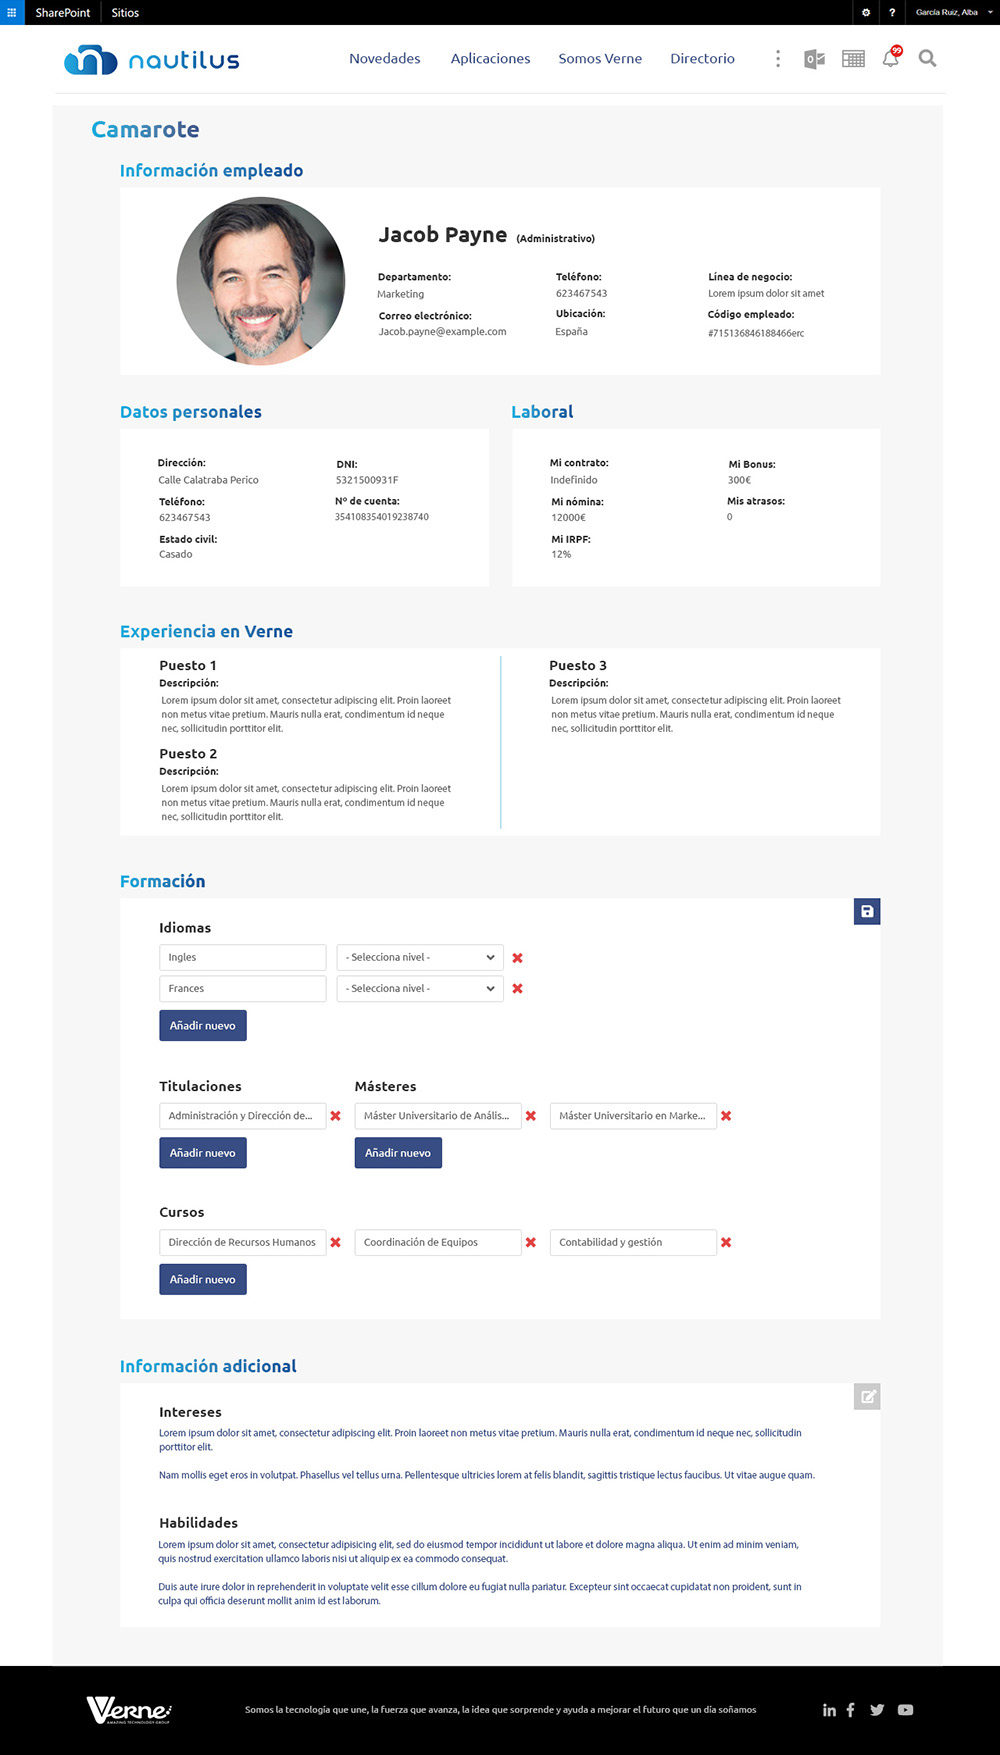 Diseño web maquetación Responsive Design ux UI interfaces Diseño Navideño front webs corporativas Slideshows